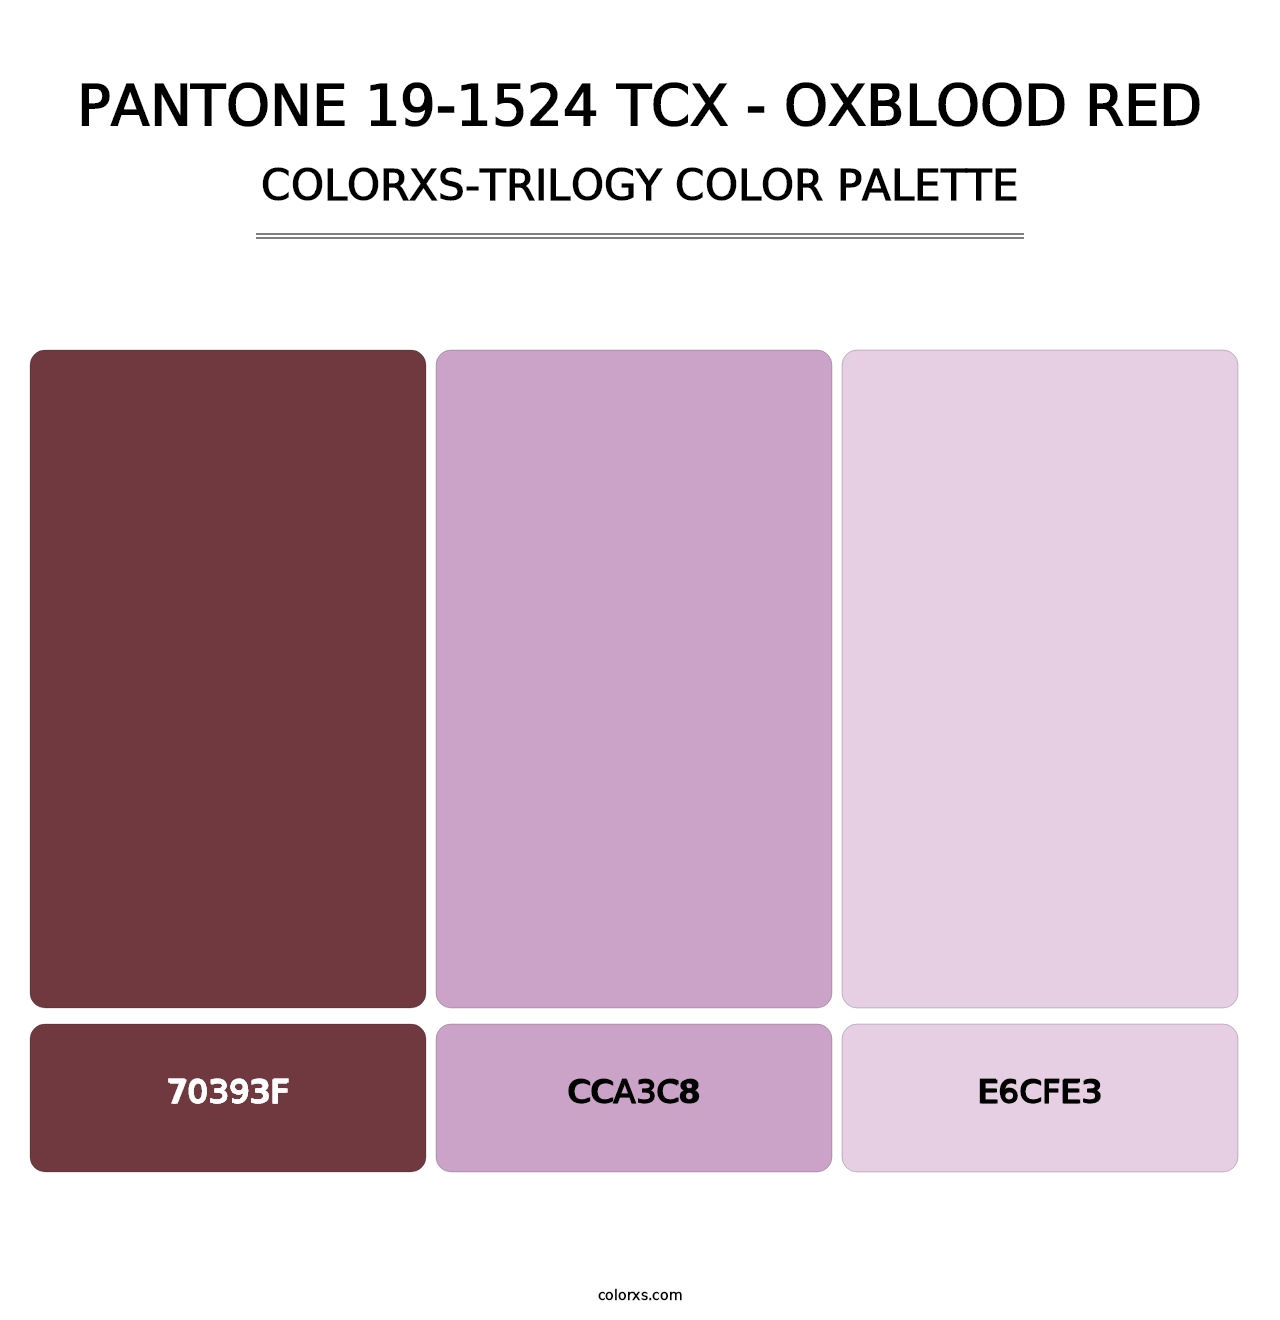 PANTONE 19-1524 TCX - Oxblood Red - Colorxs Trilogy Palette